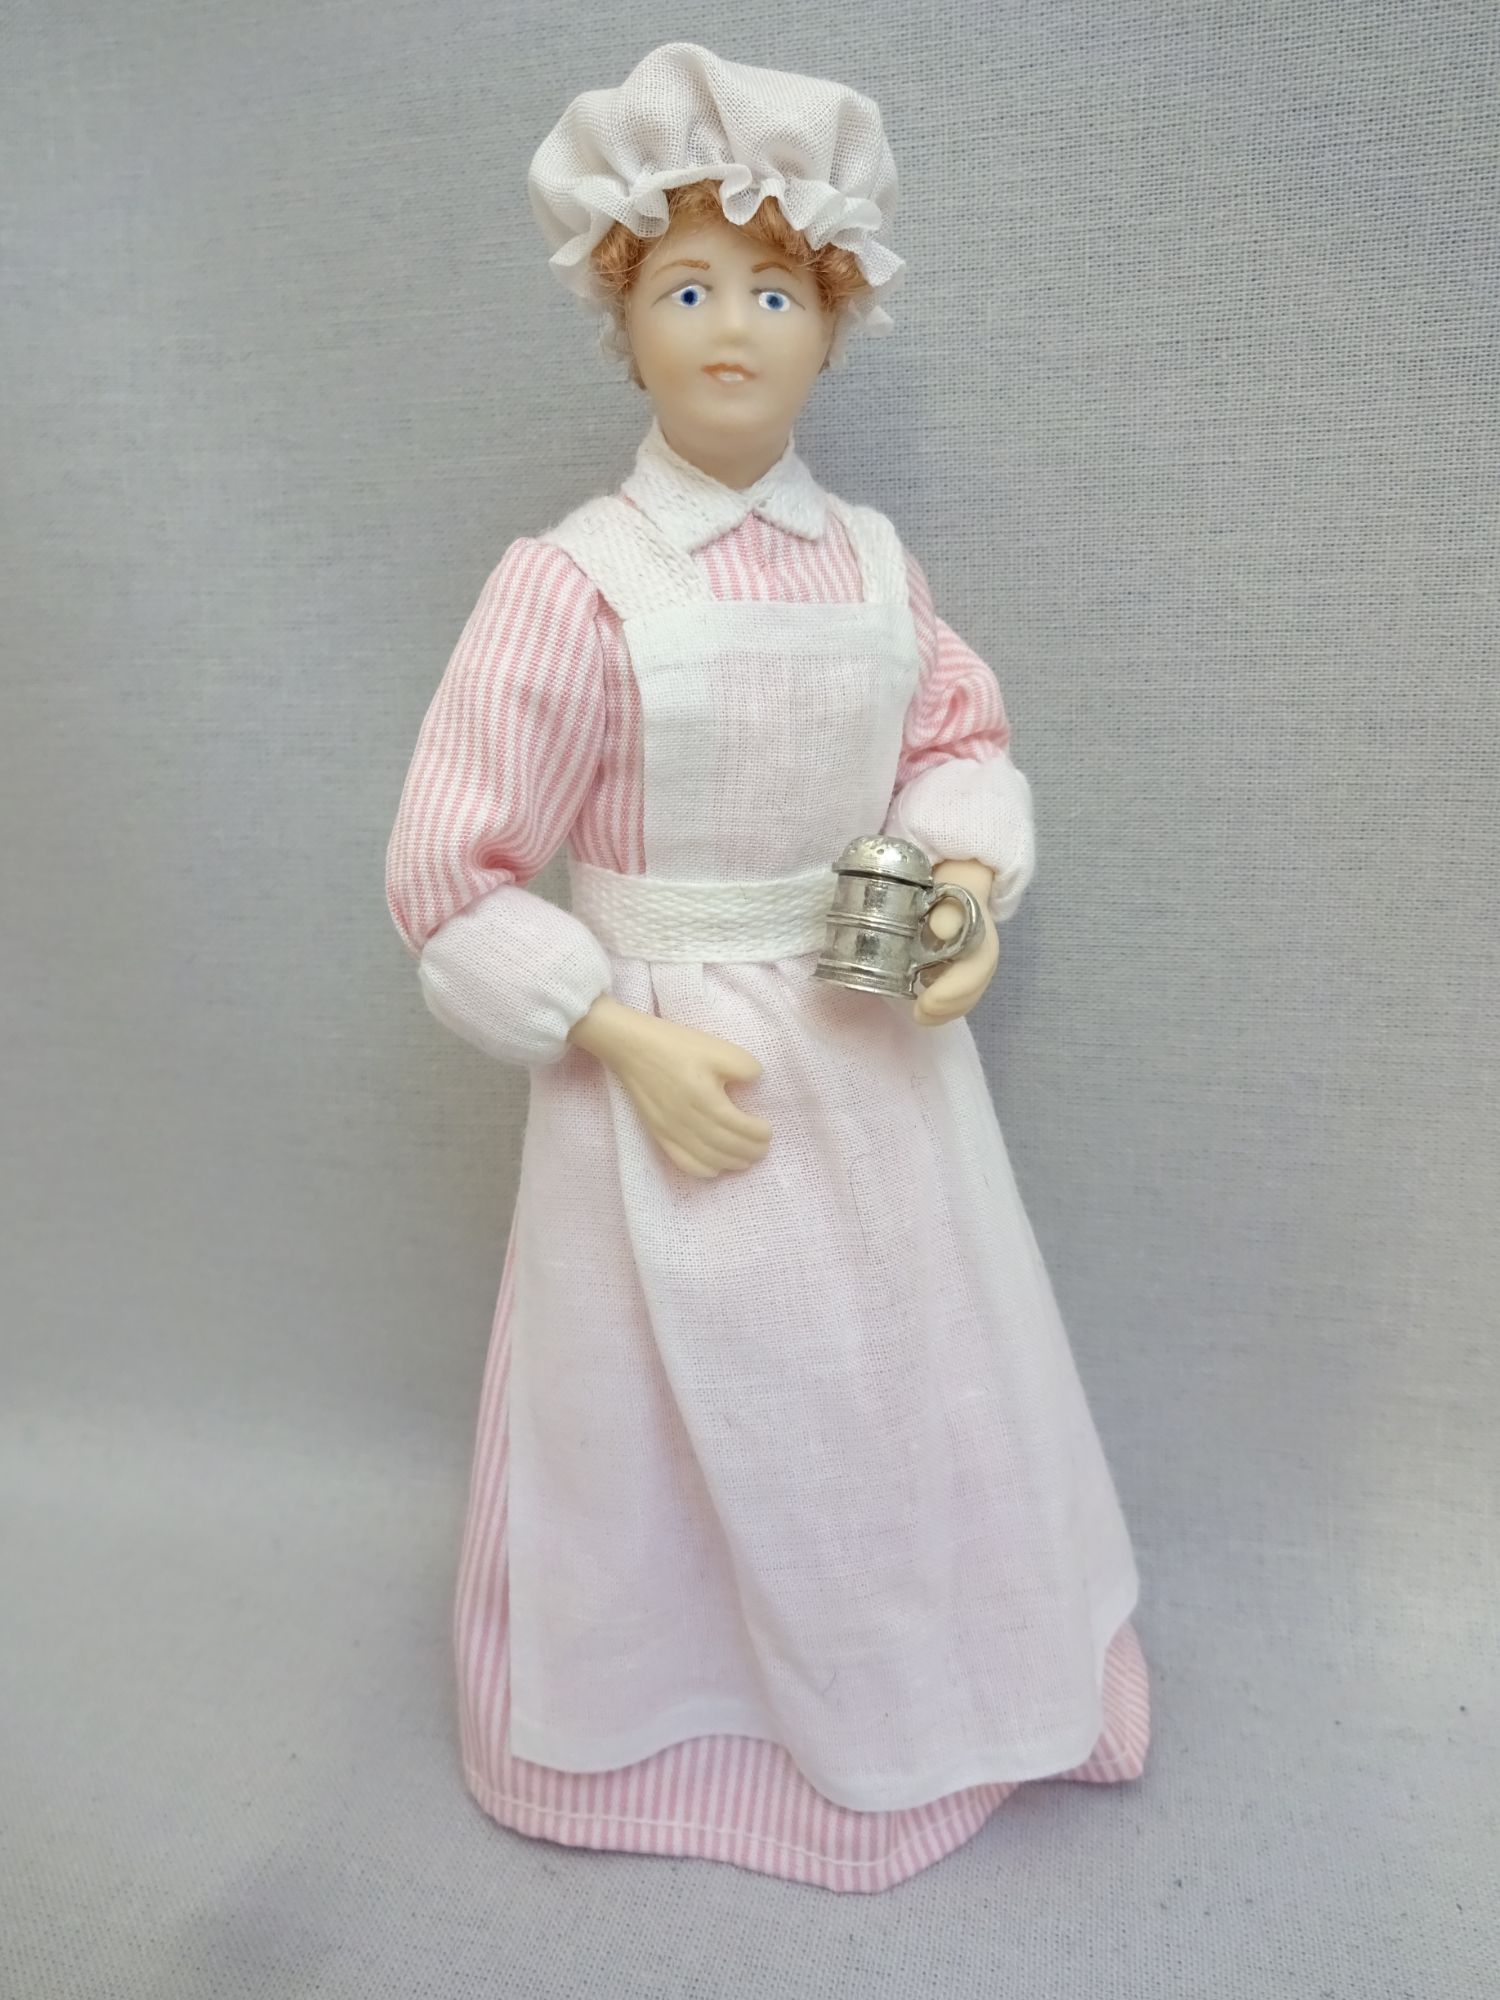 1:12 Puppenhaus Miniatur Porzellan Puppe Modell Old Servant Man Butler R5S4 